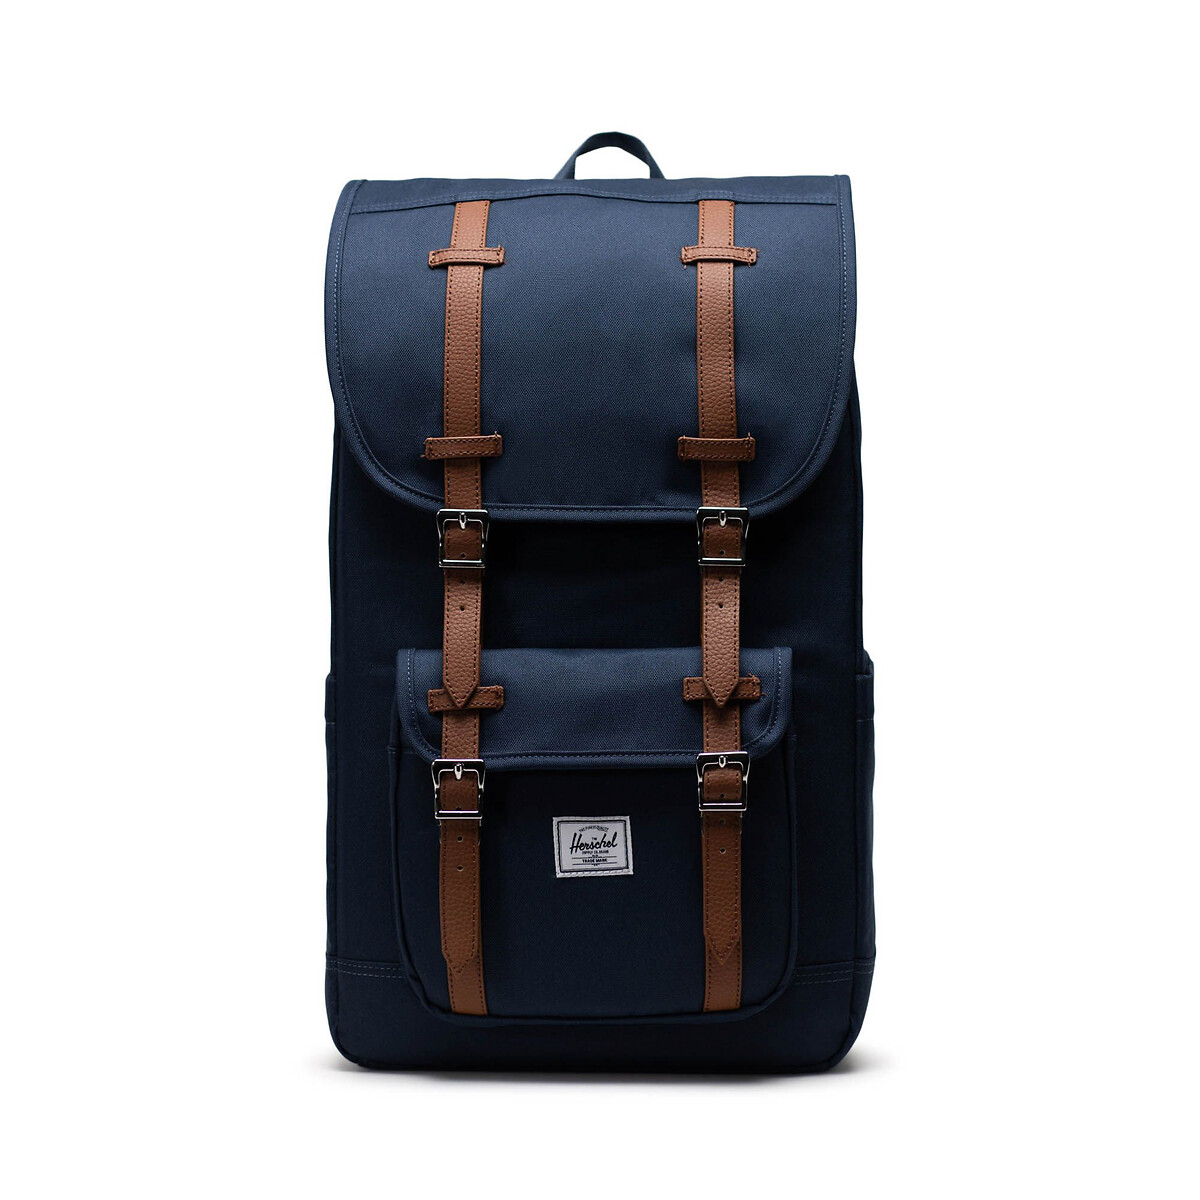 Рюкзак LITTLE AMERICA для планшета 15 единый размер синий